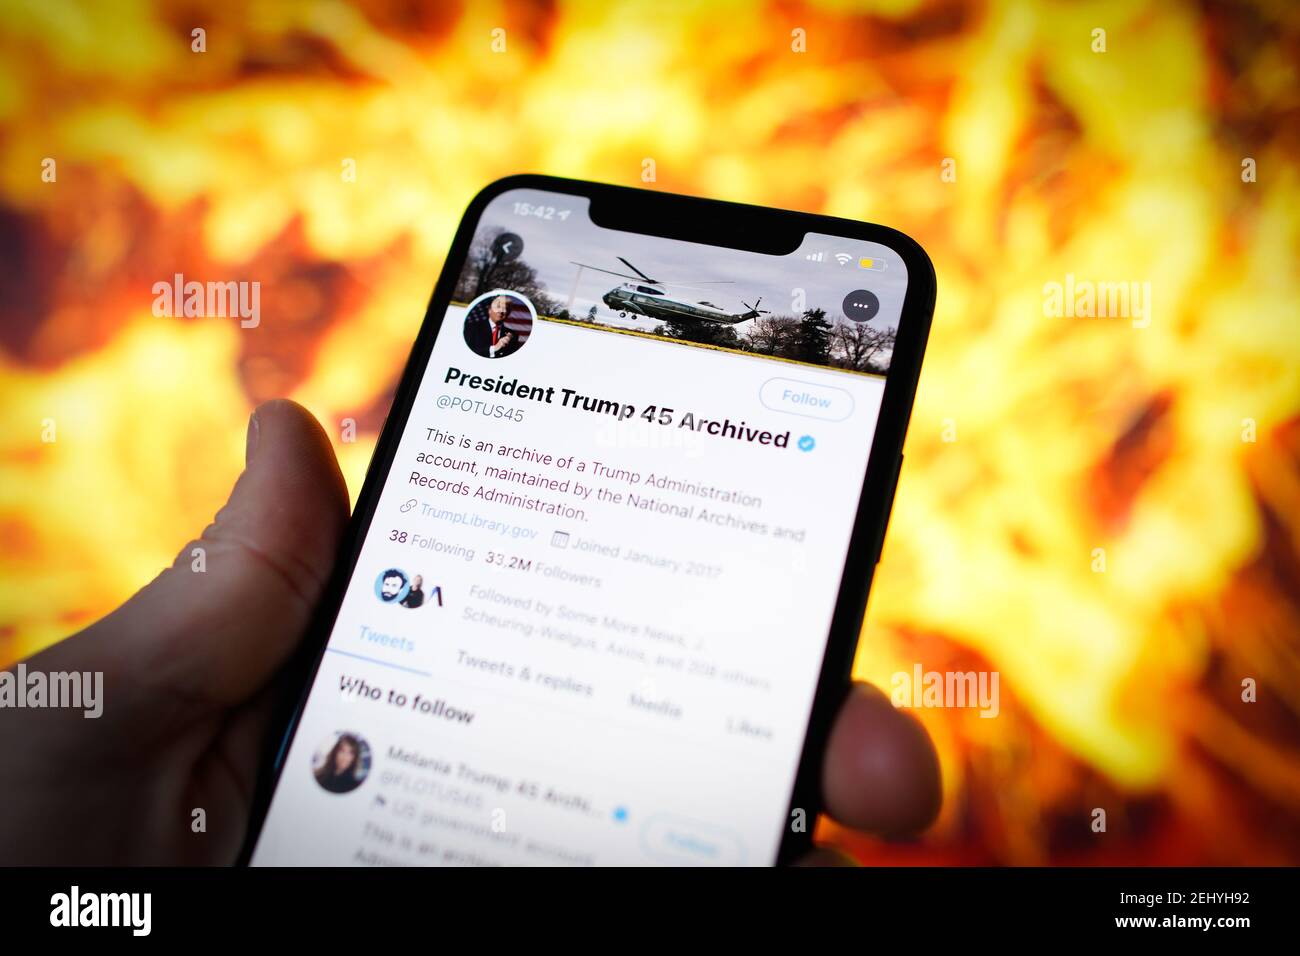 Los tweets archivados del 45º presidente de Estados Unidos, Donald Trump, se ven en un dispositivo móvil con una ilustración de una explosión en la ba Foto de stock